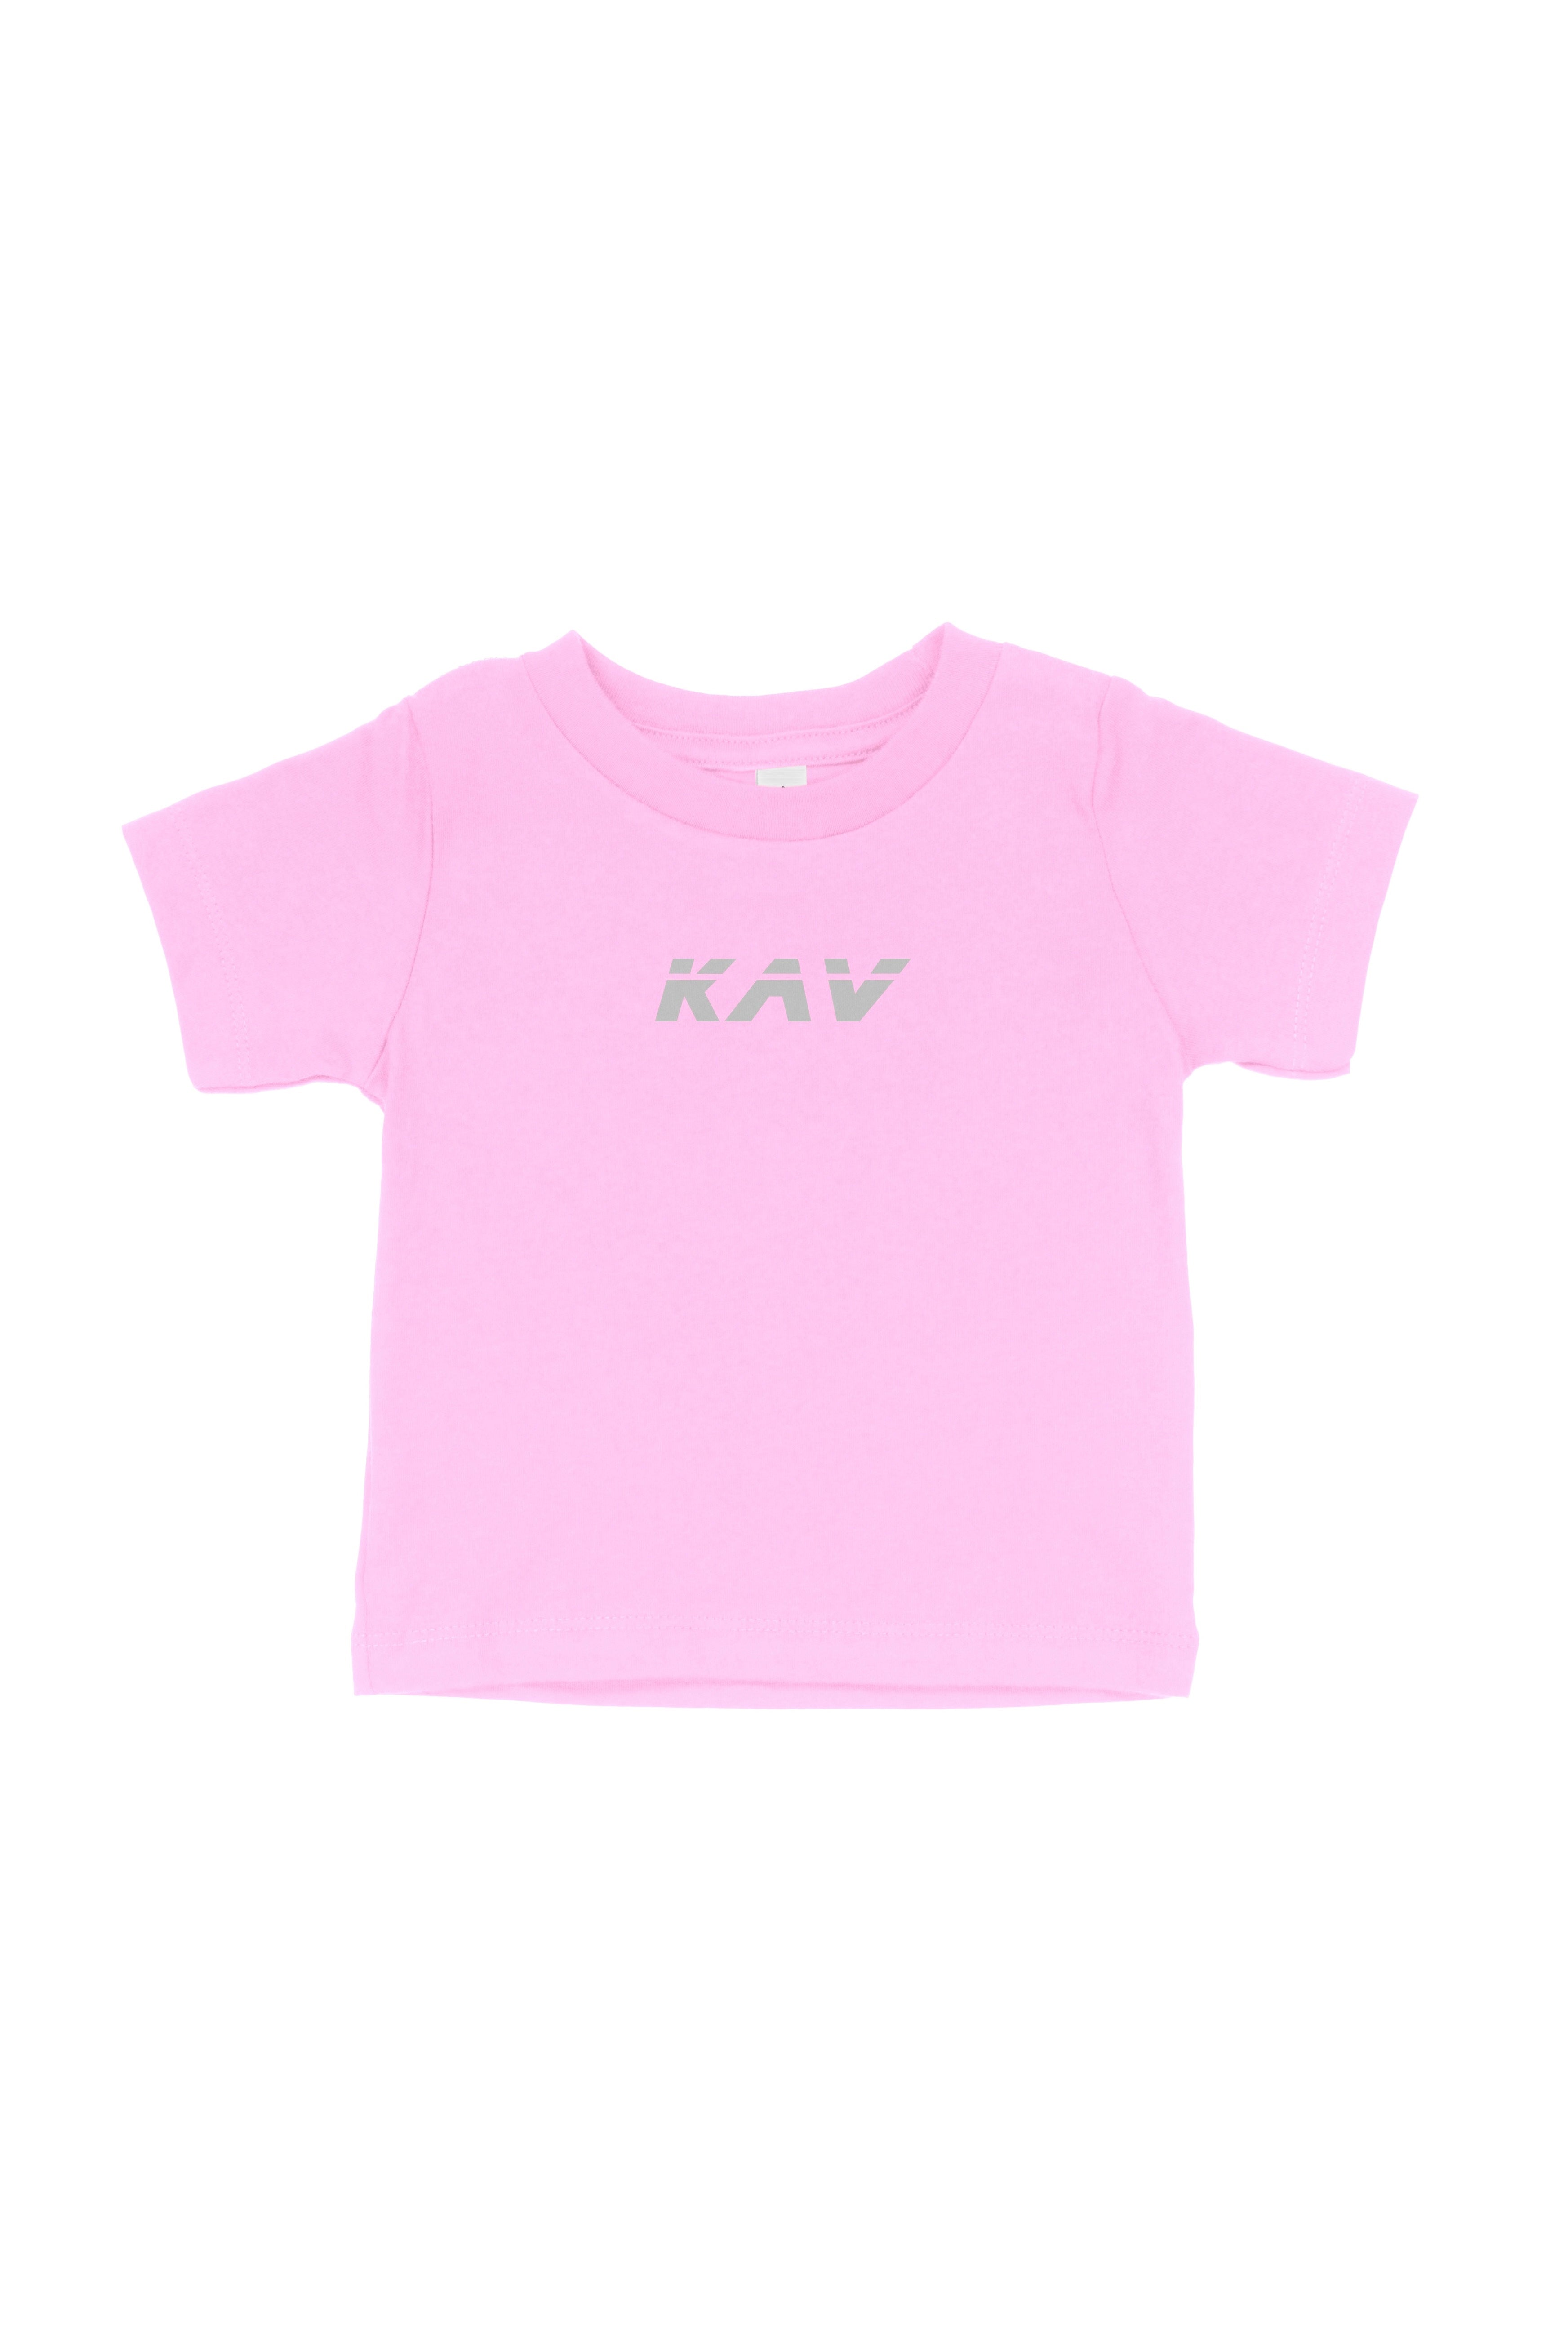 Camiseta rosa para bebé